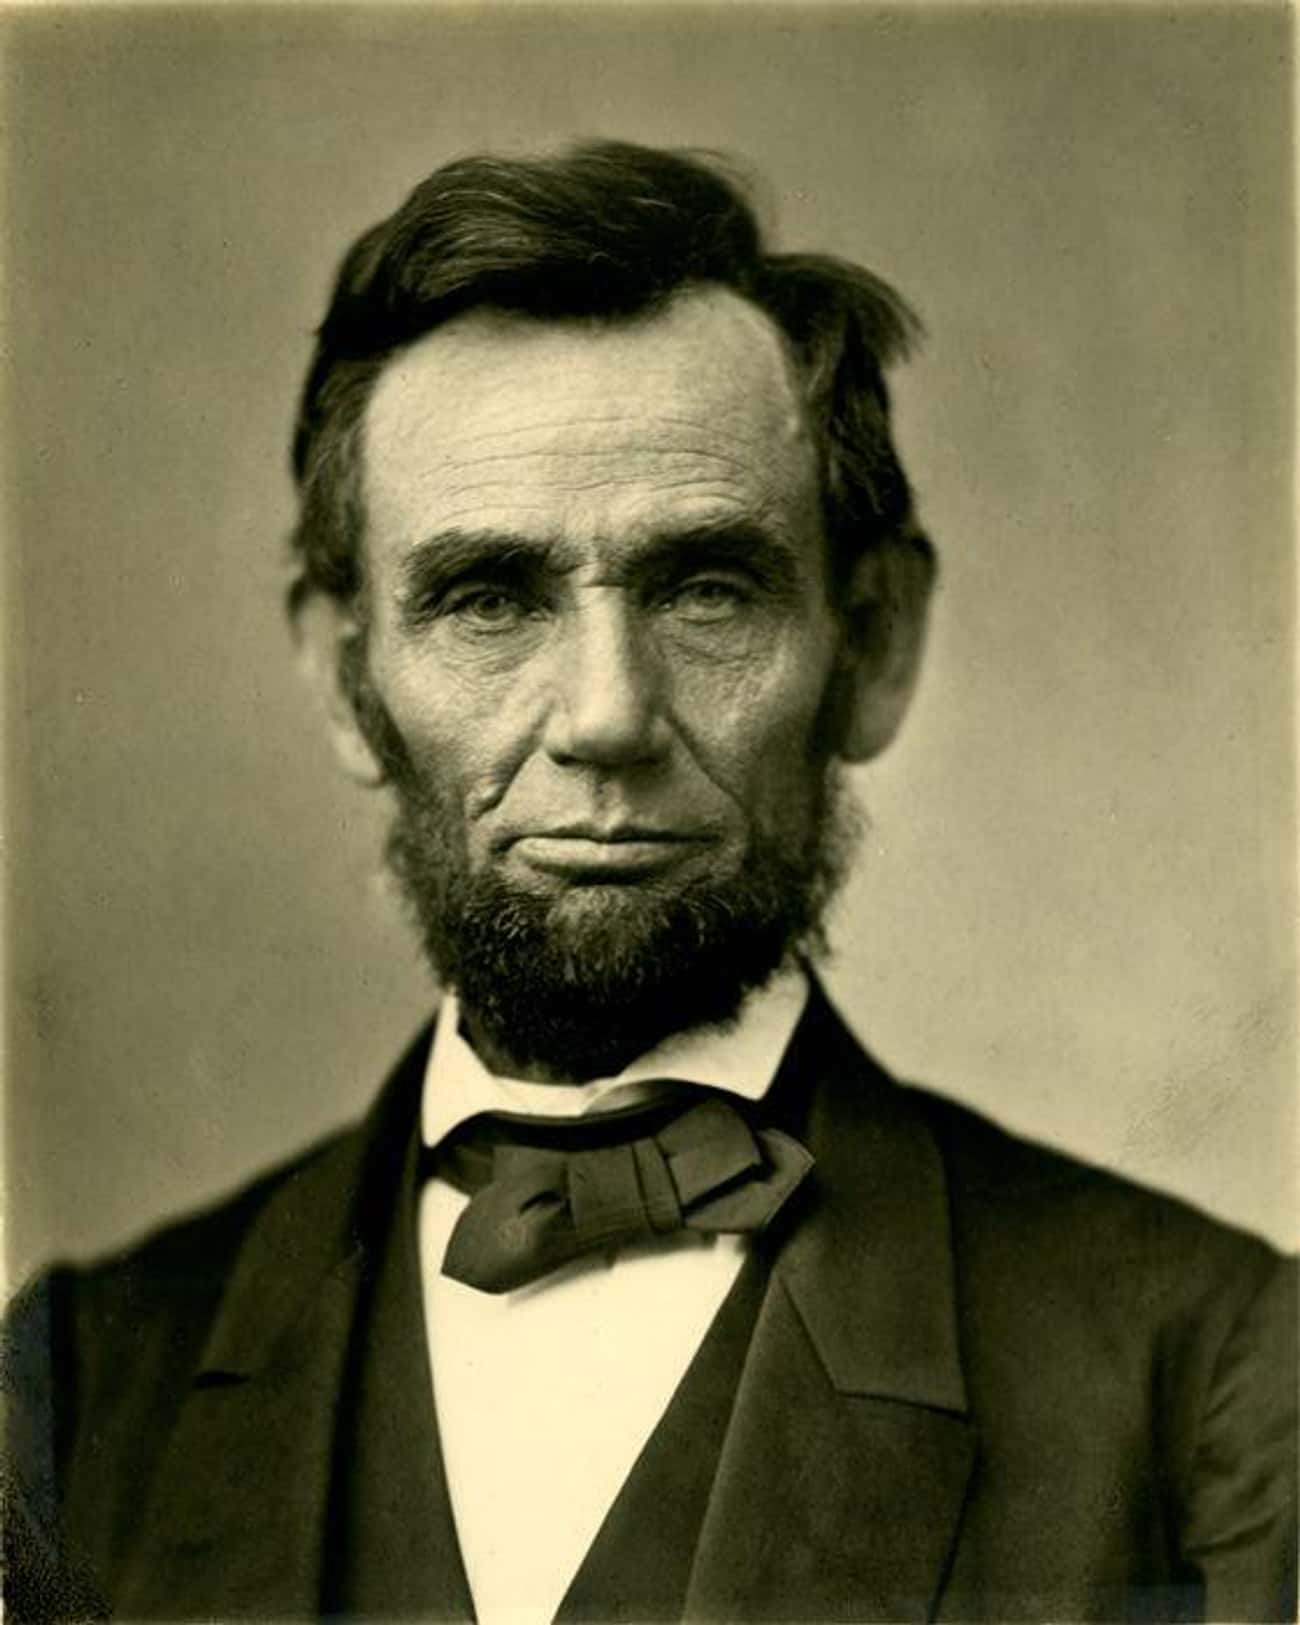 Lincoln's Cooper Union Speech